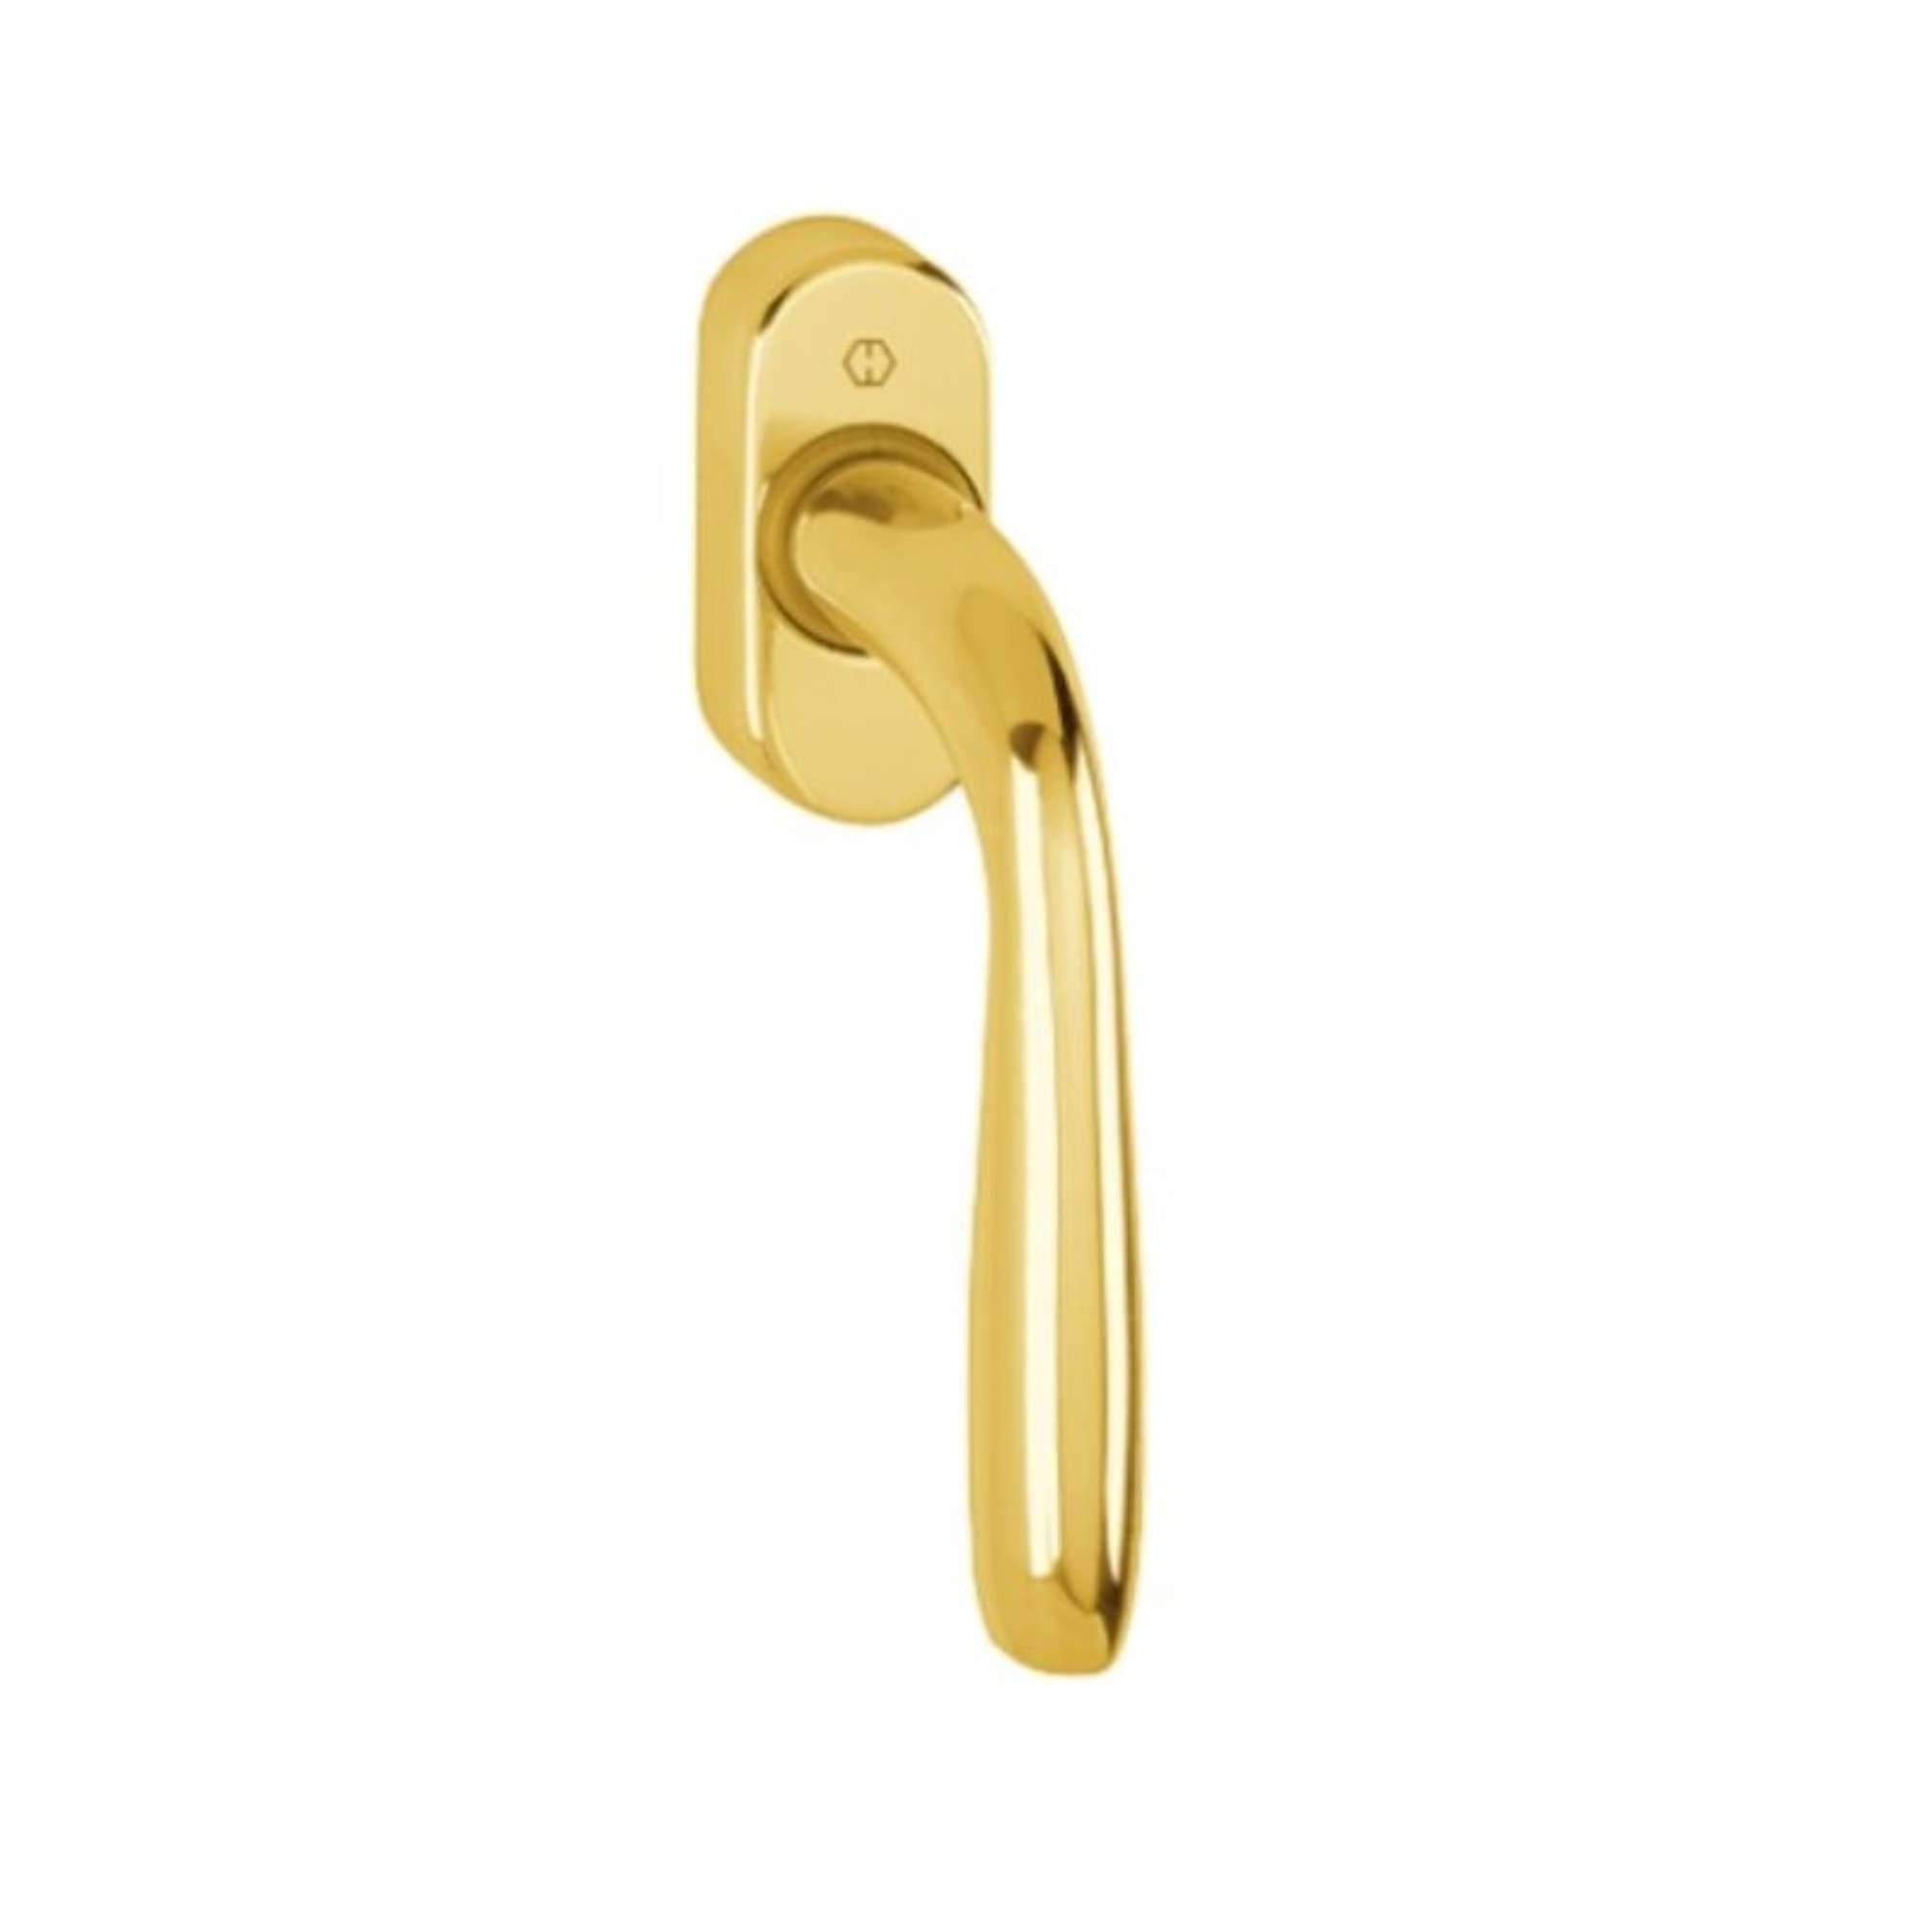 Handle, Maribor hammer DK F271 aluminum color polished gold - Hoppe 3803491